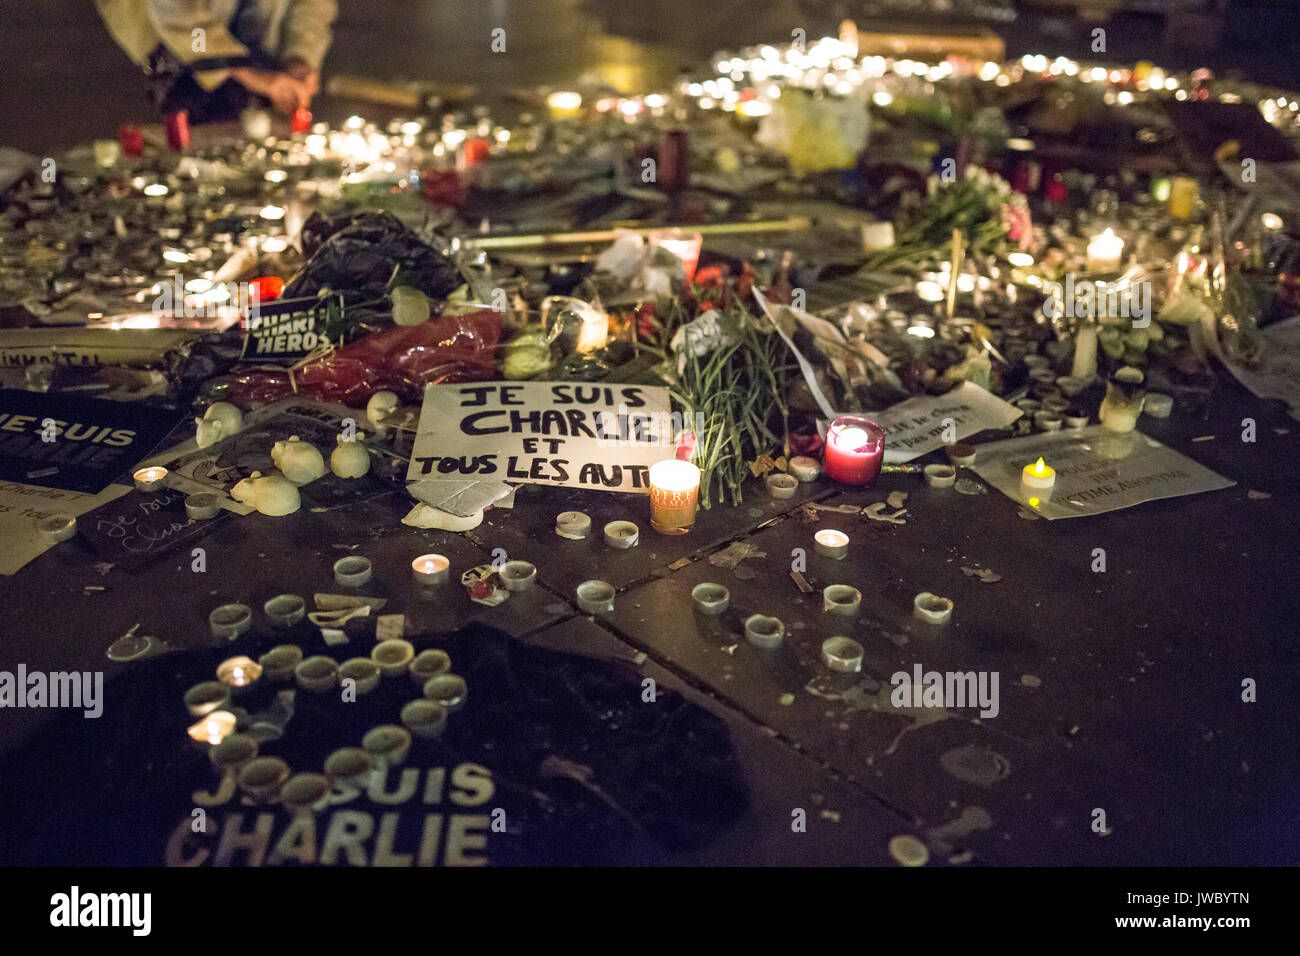 Je suis Charlie et tous les autres. Hommage an die Opfer von Charlie Hebdo Tötung in Paris der 7. Januar 2015. Stockfoto